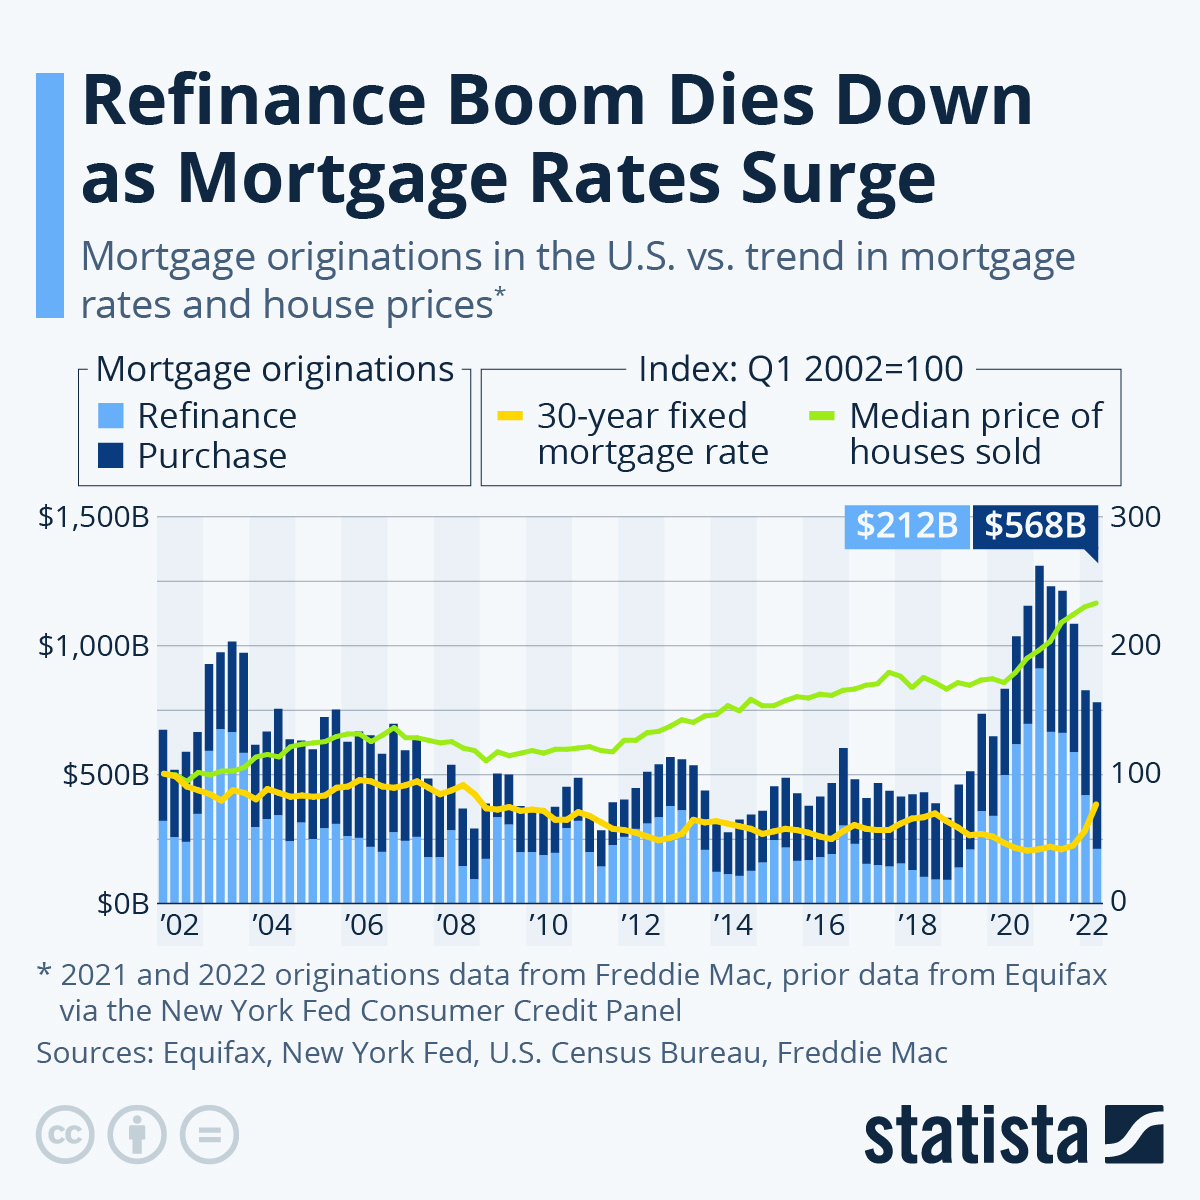 El aumento de la tasa hipotecaria acaba con el auge del refinanciamiento